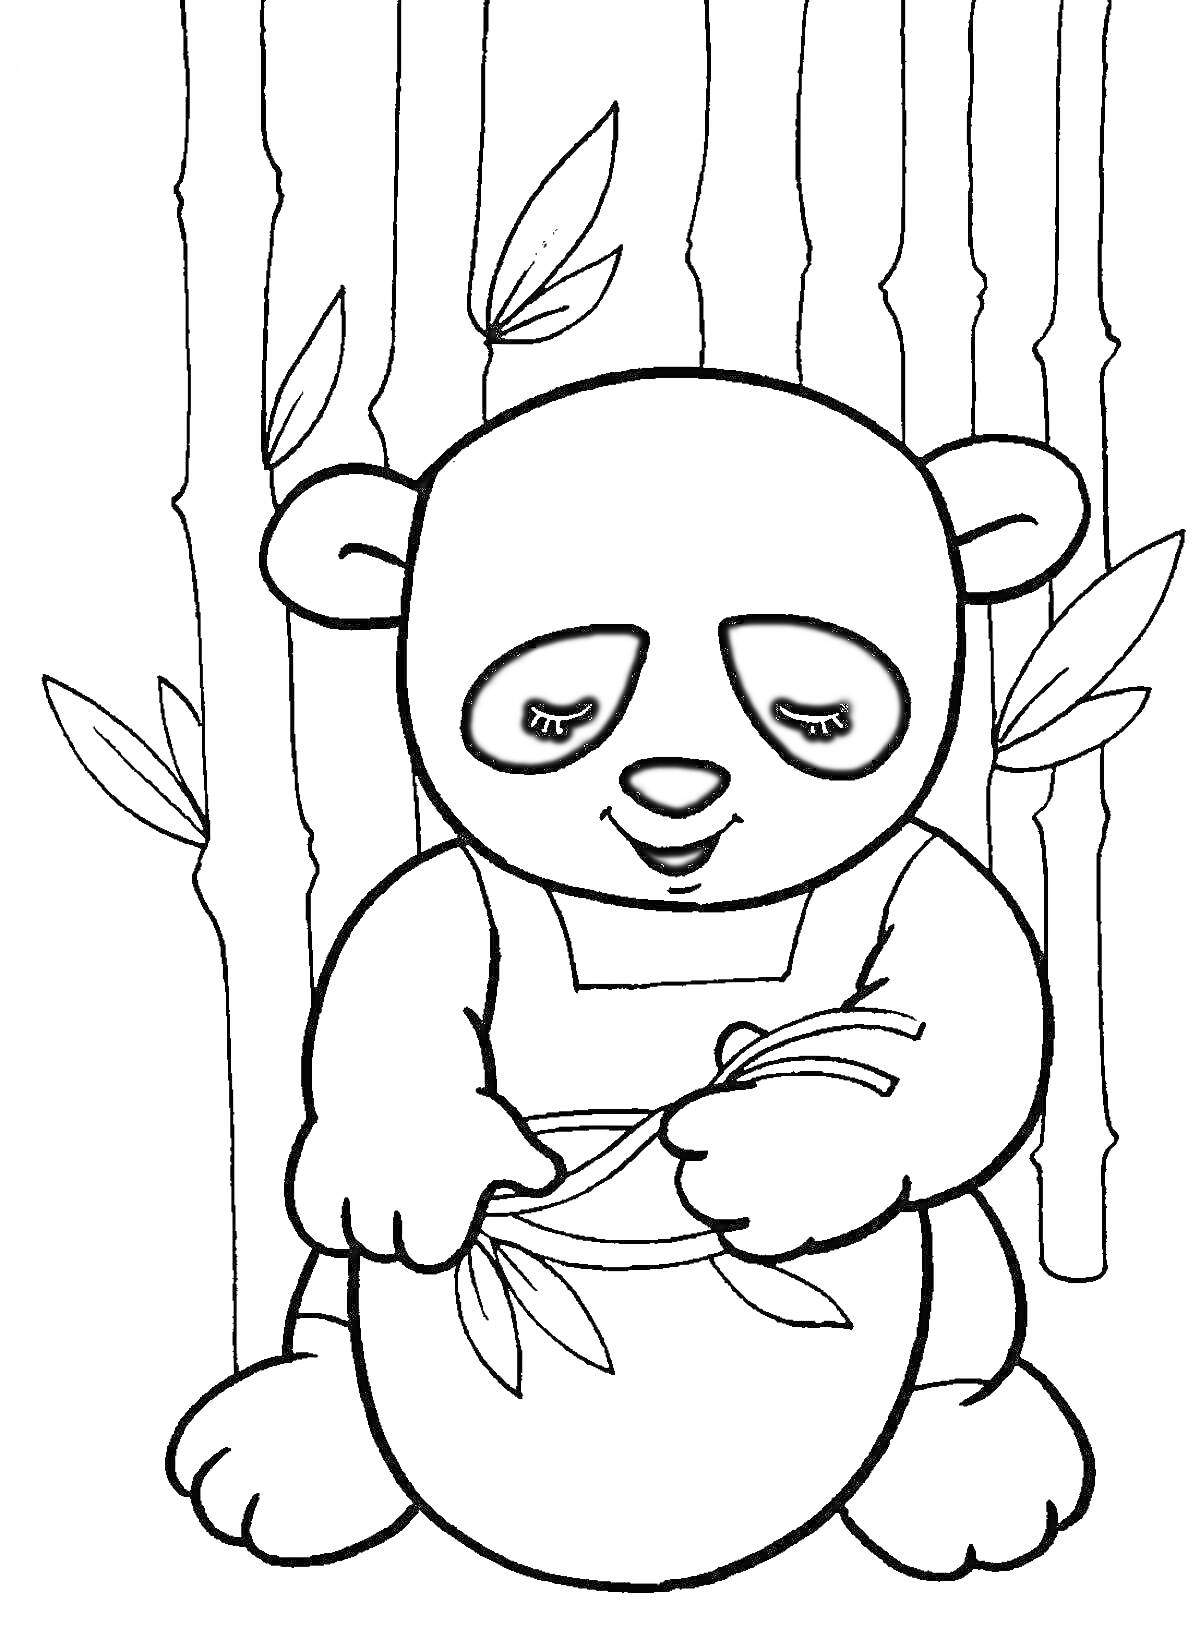 Панда, сидящая с банкой и держащая бамбуковые ветки, на фоне бамбукового леса